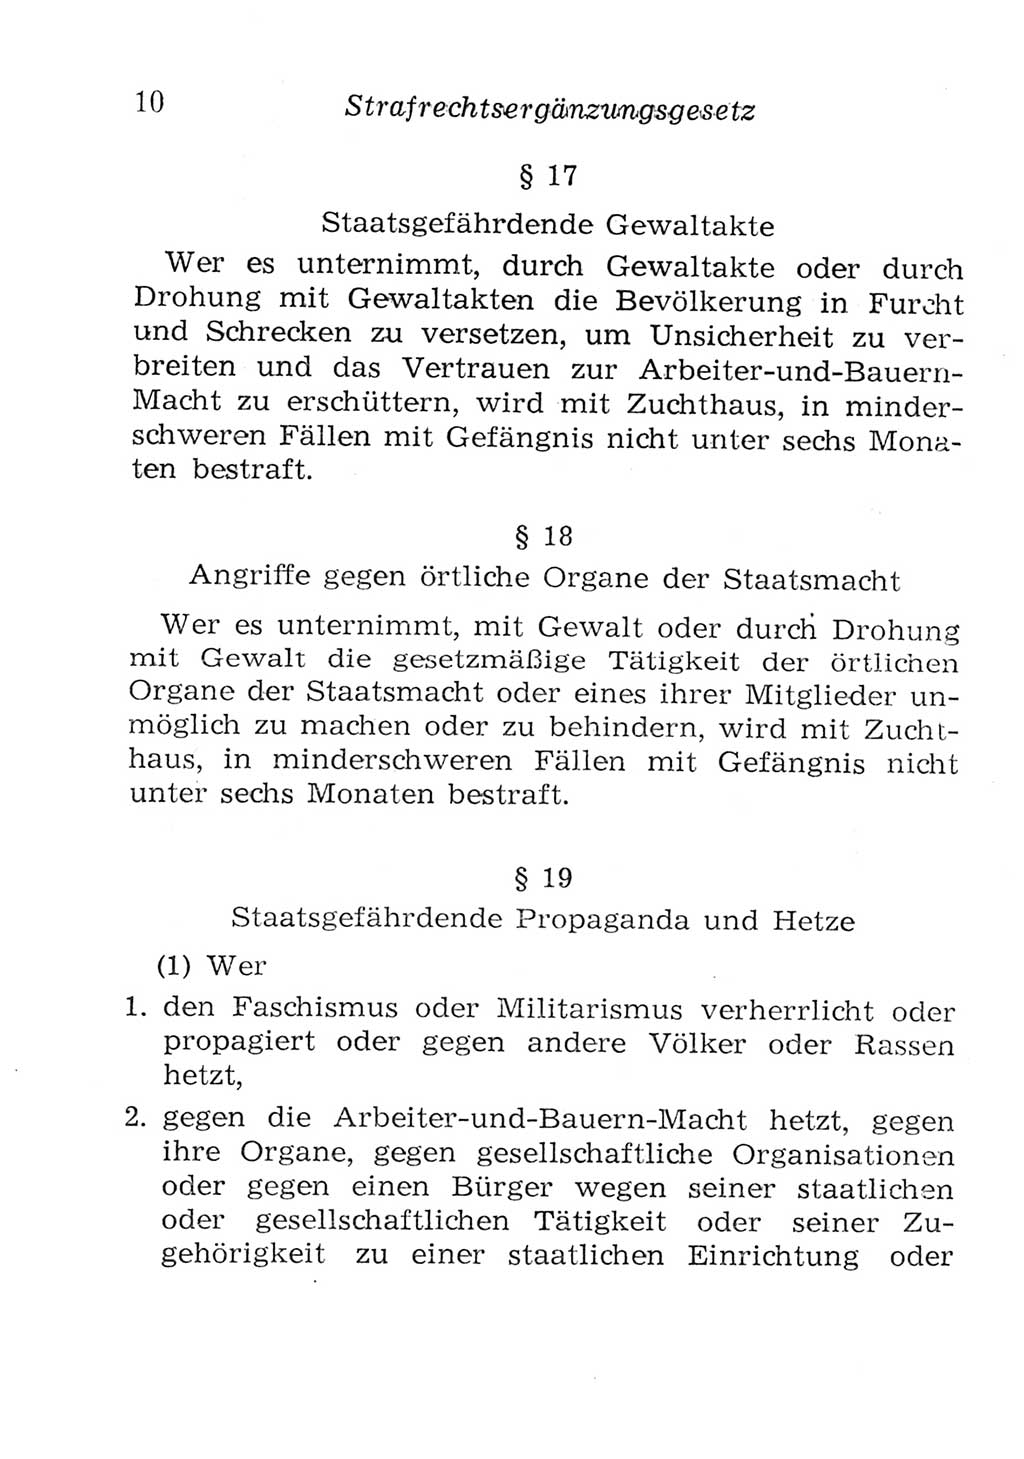 Strafgesetzbuch (StGB) und andere Strafgesetze [Deutsche Demokratische Republik (DDR)] 1957, Seite 10 (StGB Strafges. DDR 1957, S. 10)